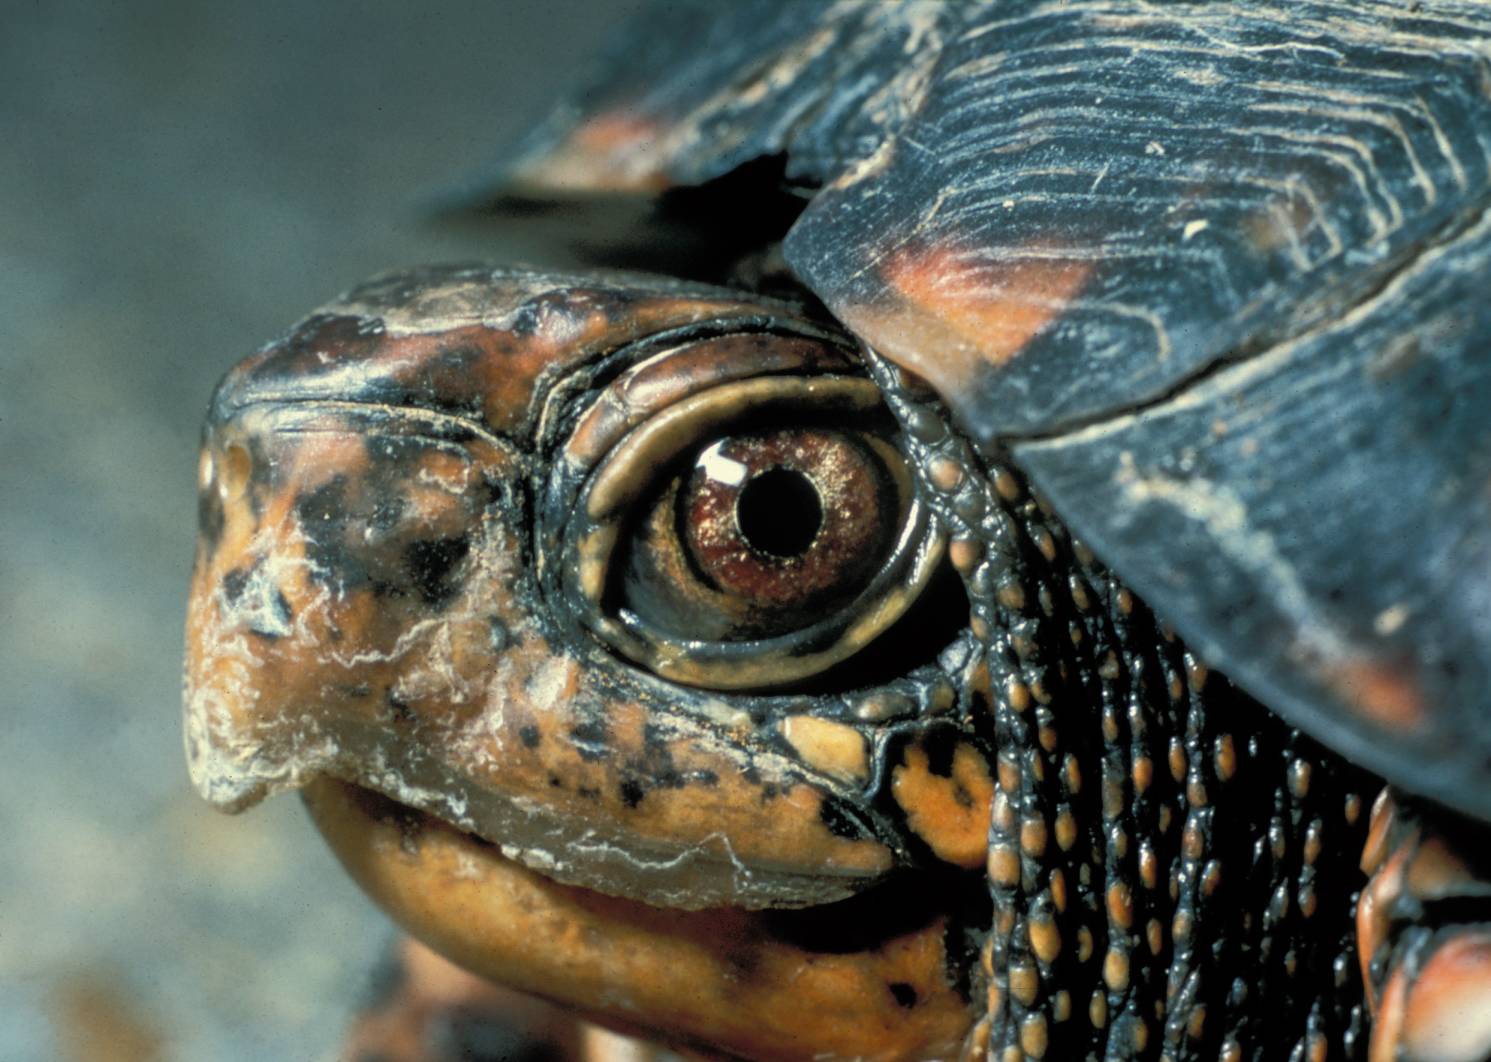 File:Eastern Box Turtle Head.jpg - Wikimedia Commons